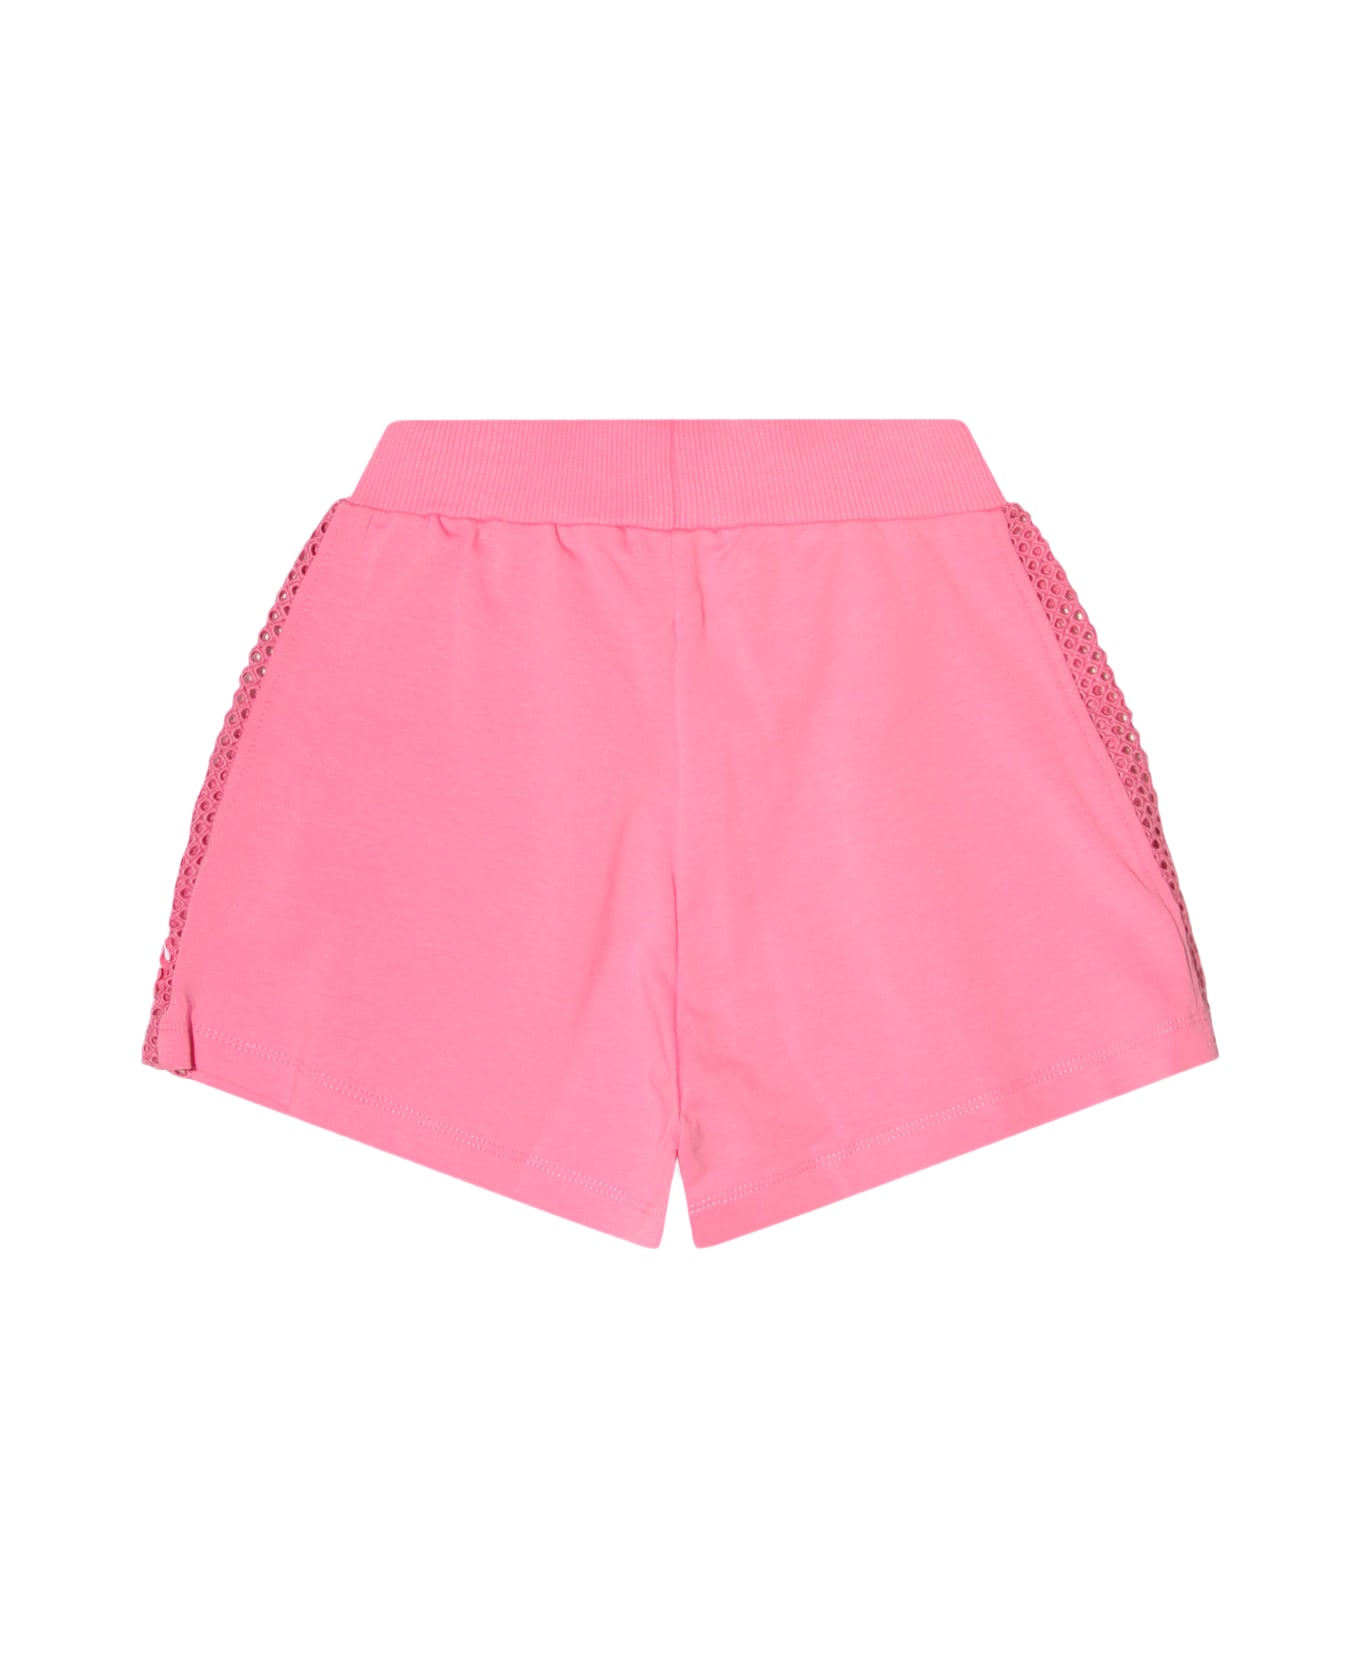 Monnalisa Pink Peach Cotton Shorts - Rosa Peach ボトムス